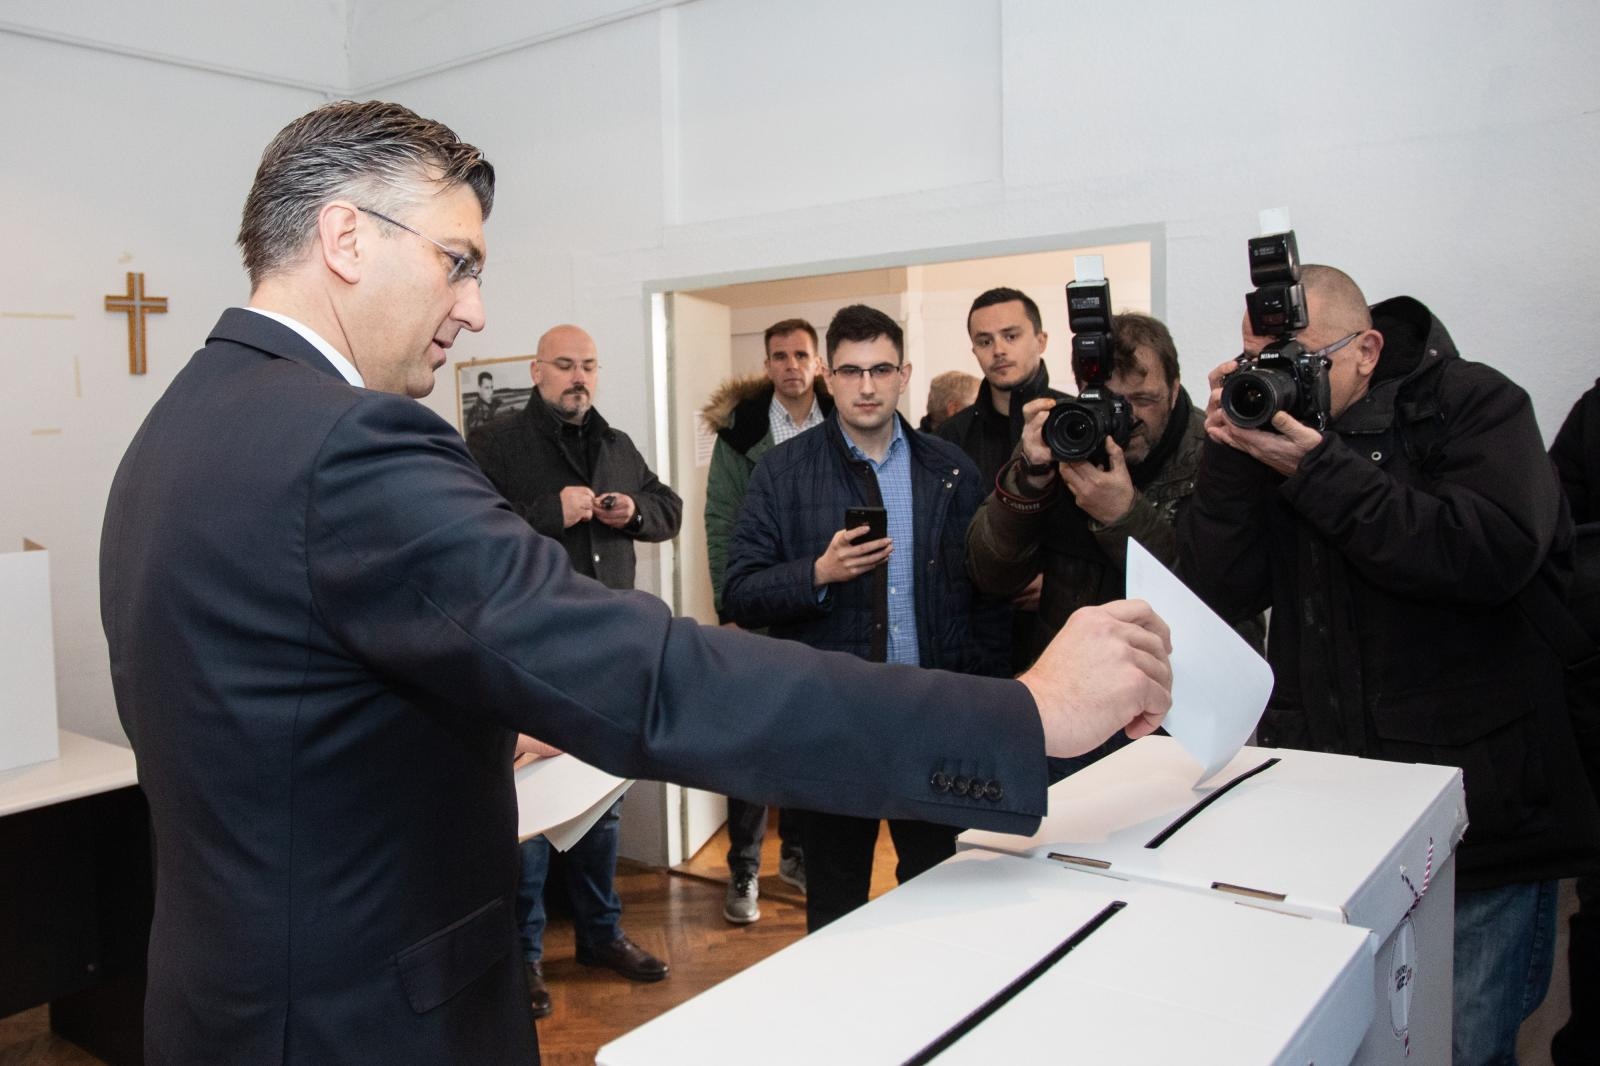 15.03.2020., Zagreb - Premijer Andrej Plenkovic glasao je na unutarstranackim izborima HDZ-a na izbornom mjestu u Slovenskoj 13.
Photo: Davor Puklavec/PIXSELL